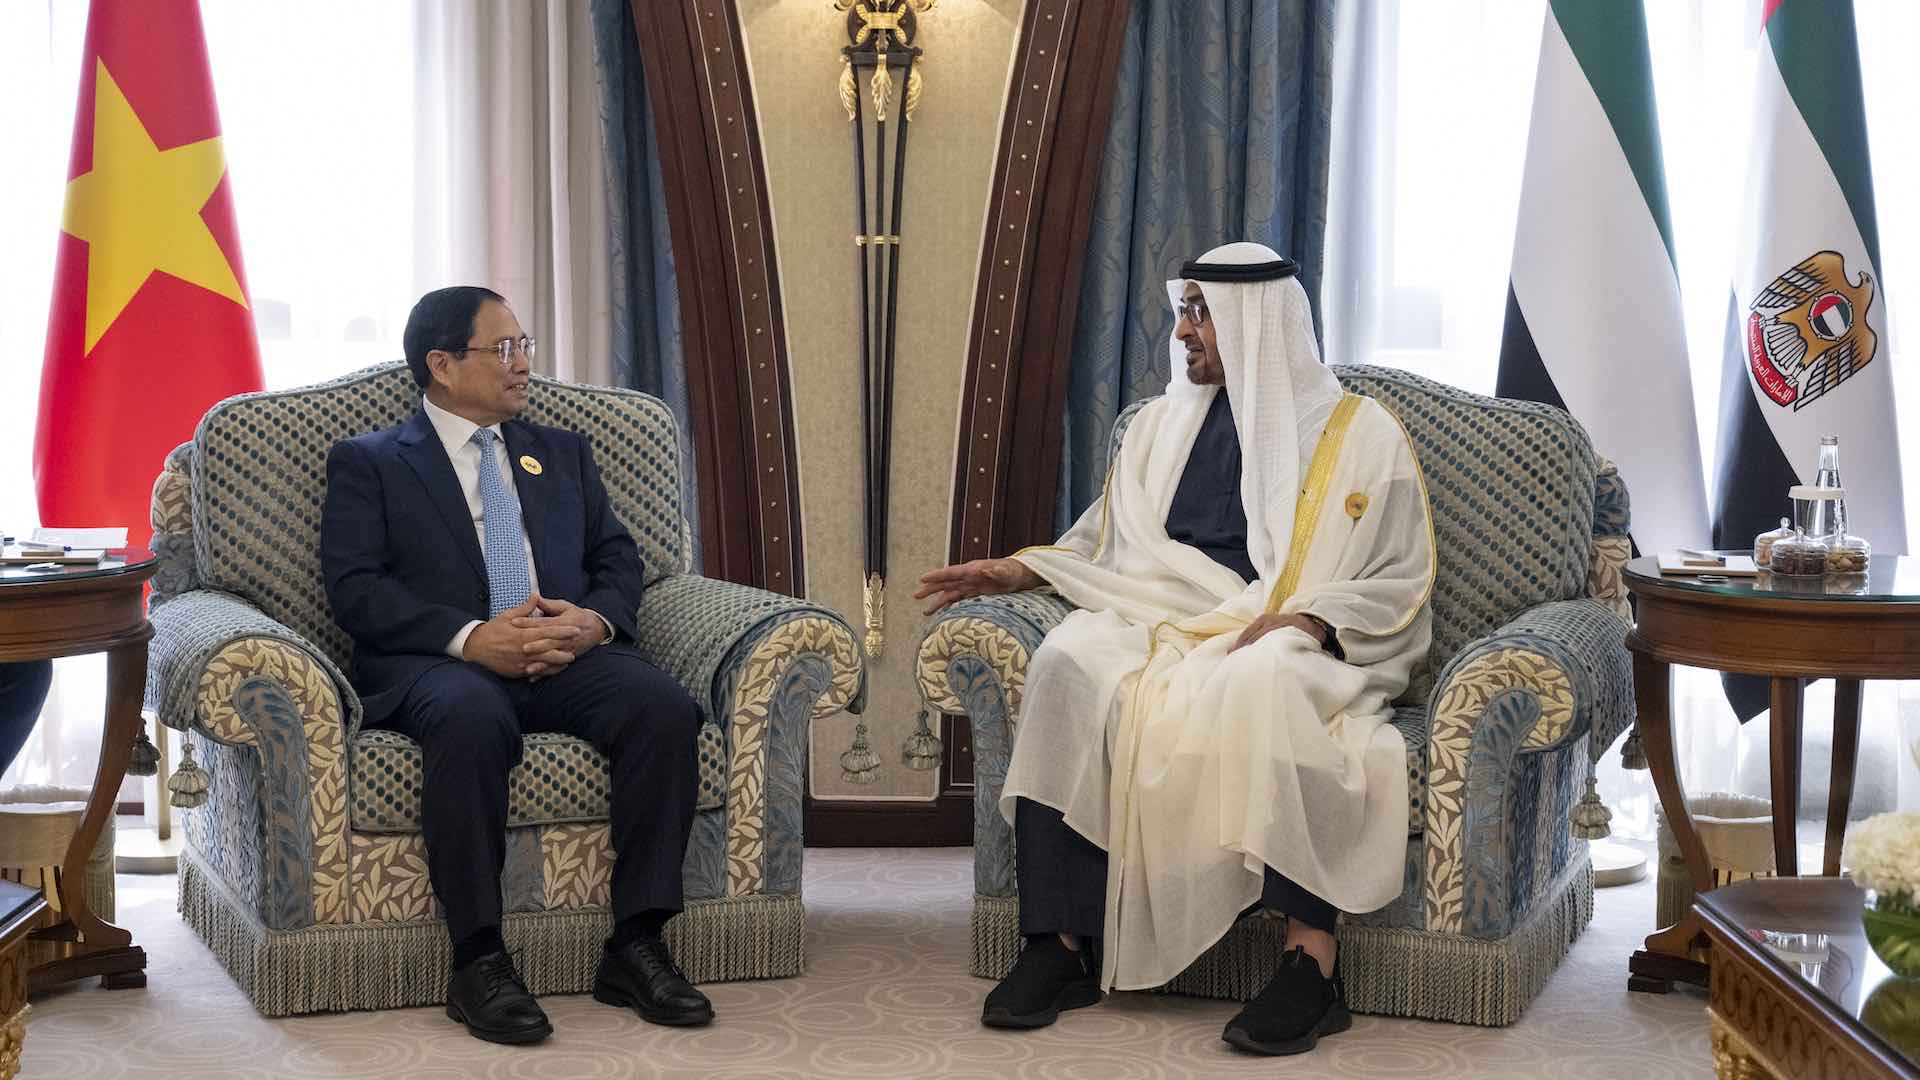 UAE अध्यक्षांनी GCC-ASEAN शिखर परिषदेत व्हिएतनामच्या पंतप्रधानांशी द्विपक्षीय चर्चा केली